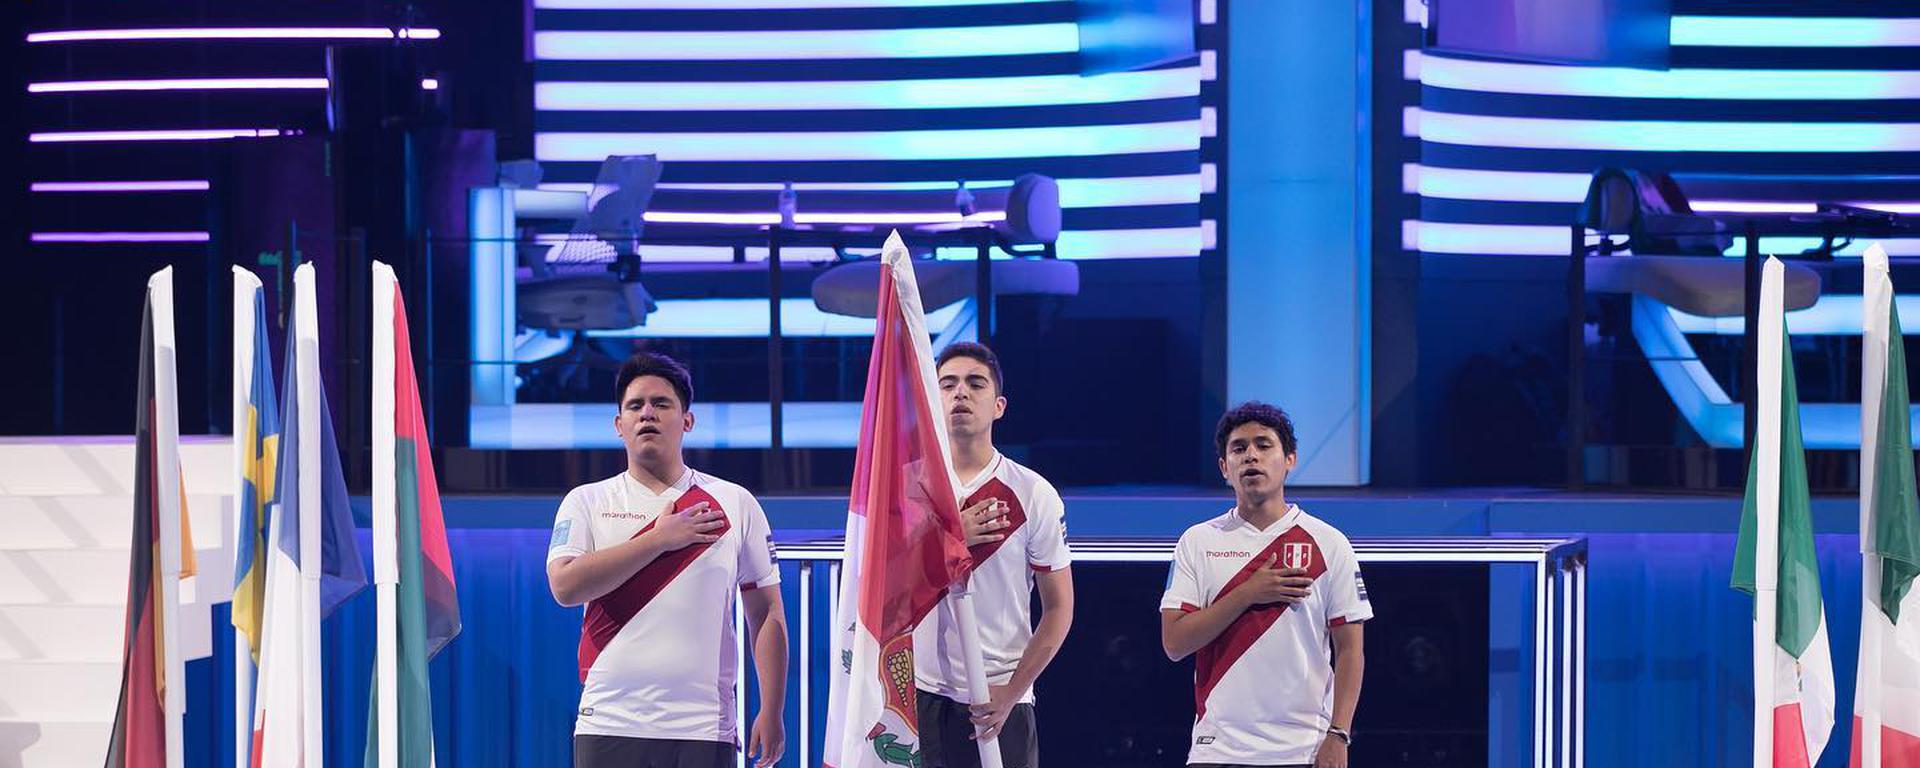 Perú en el Mundial de FIFA 22: “El próximo año vendremos nuevamente por la revancha”